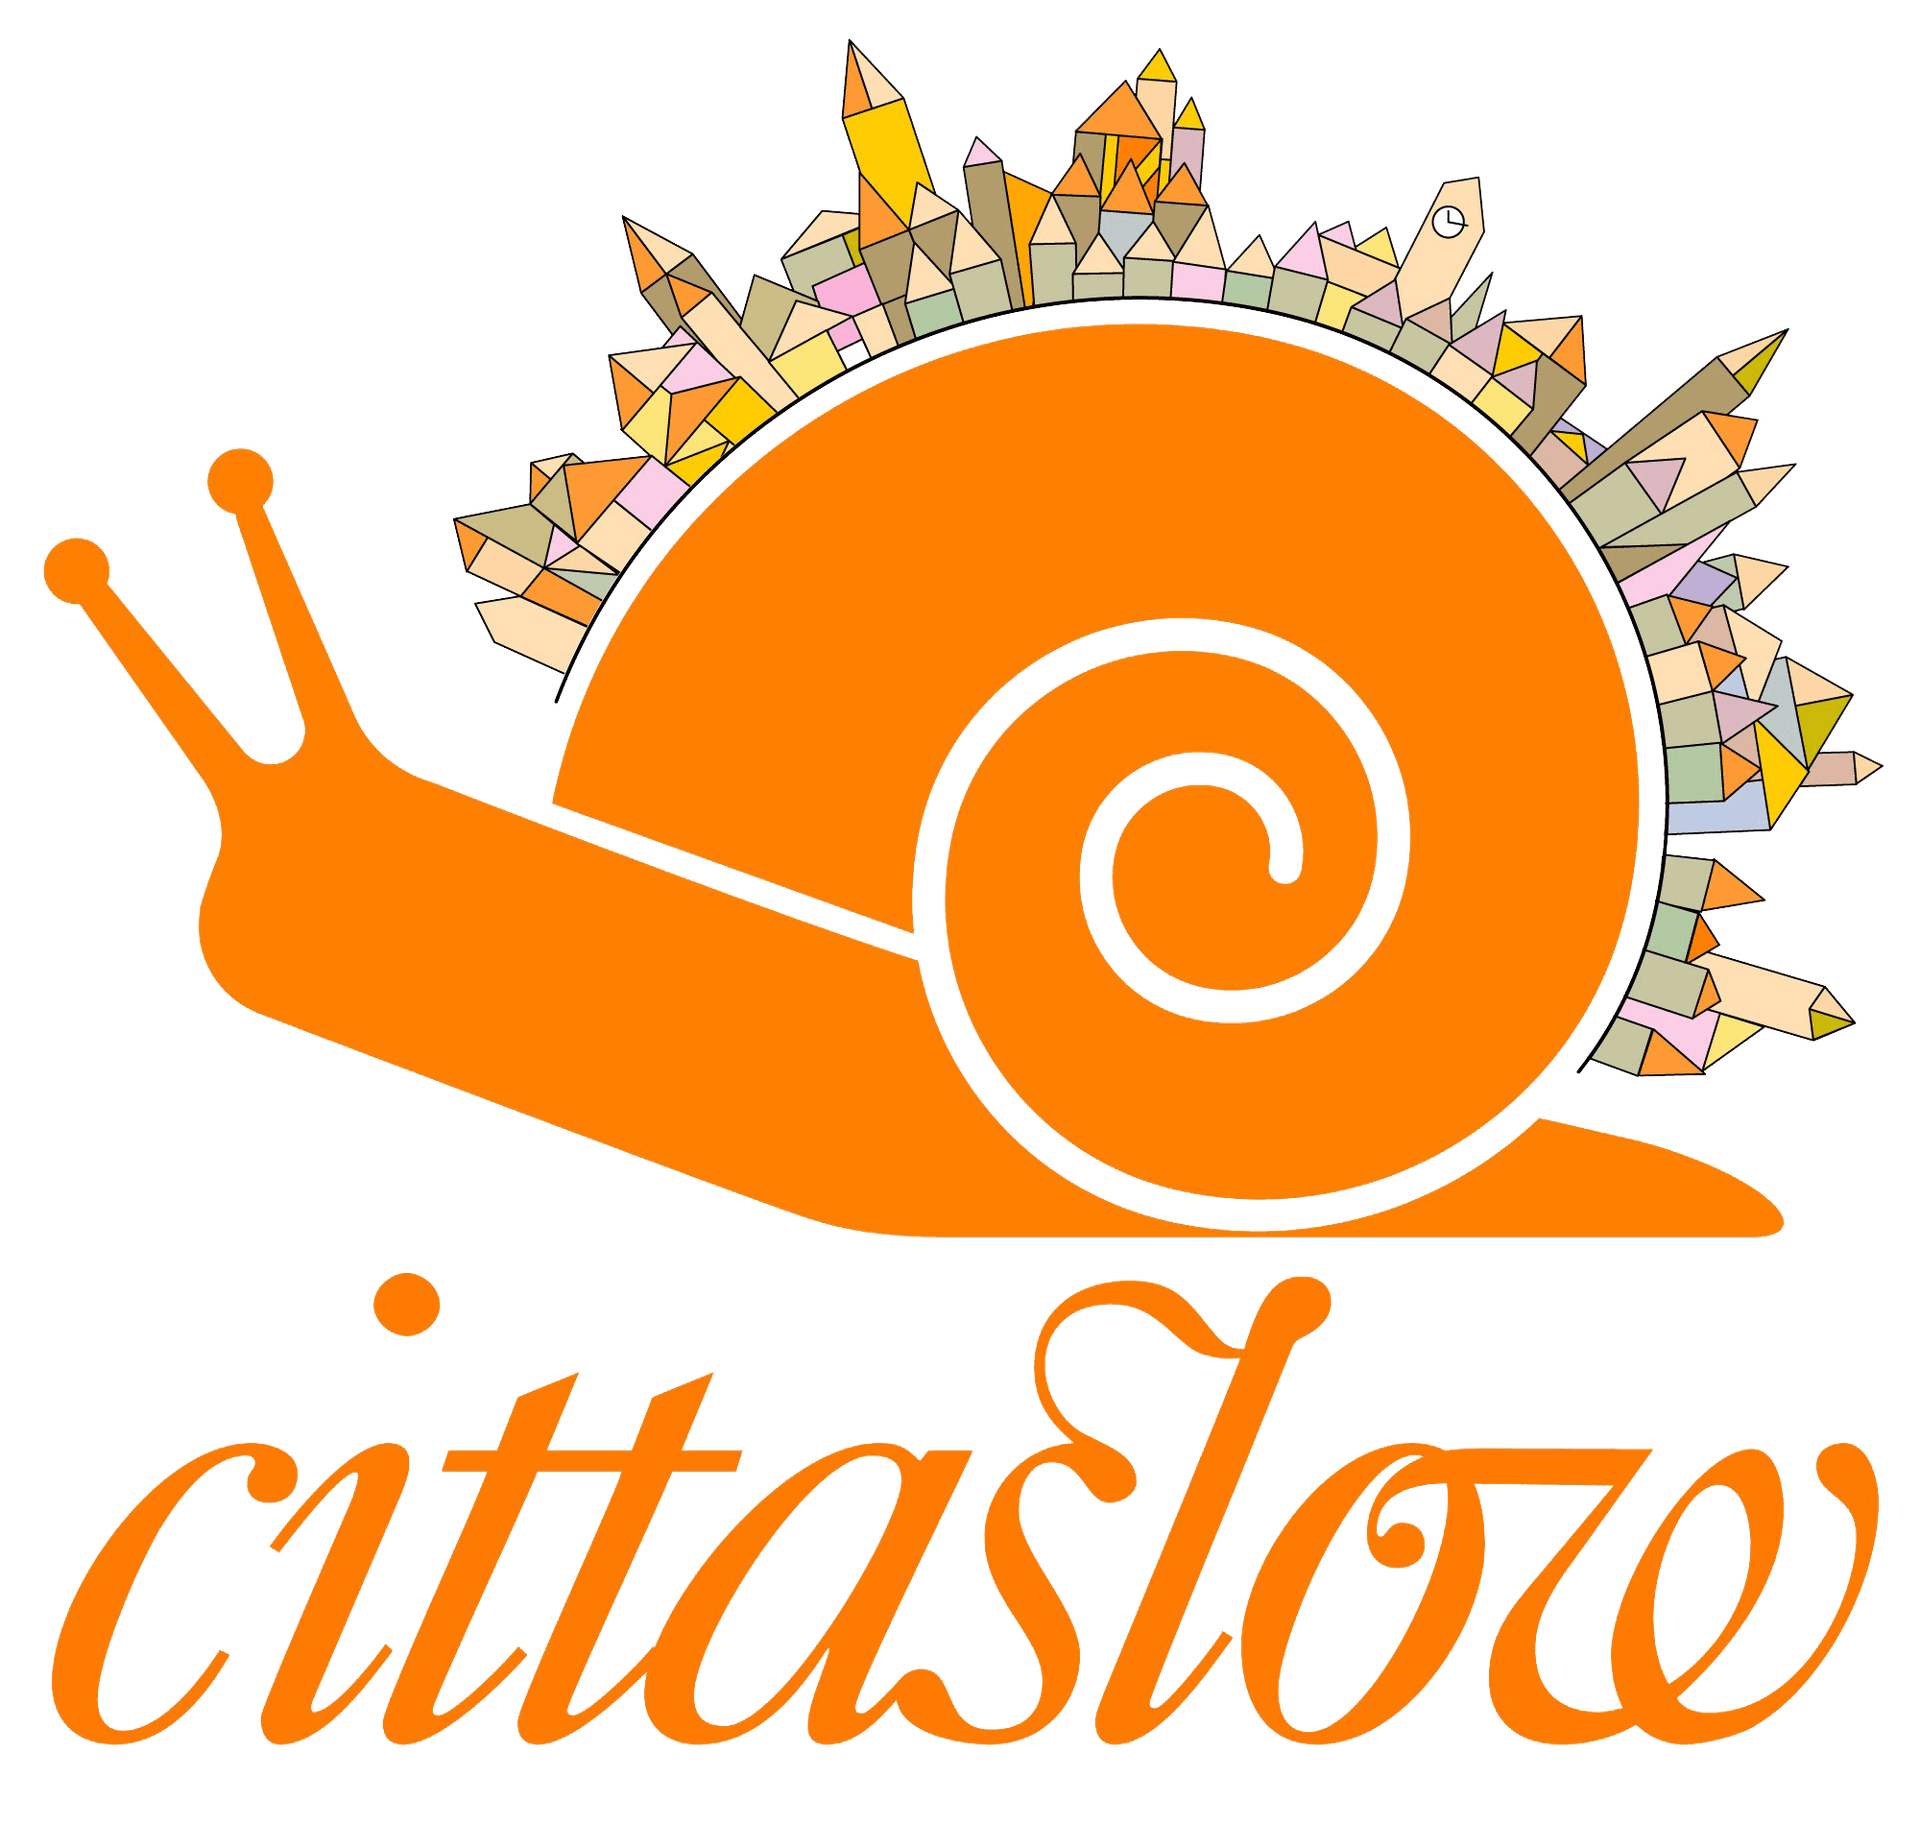 Een slak met huisjes op zijn huis, het logo van cittaslow